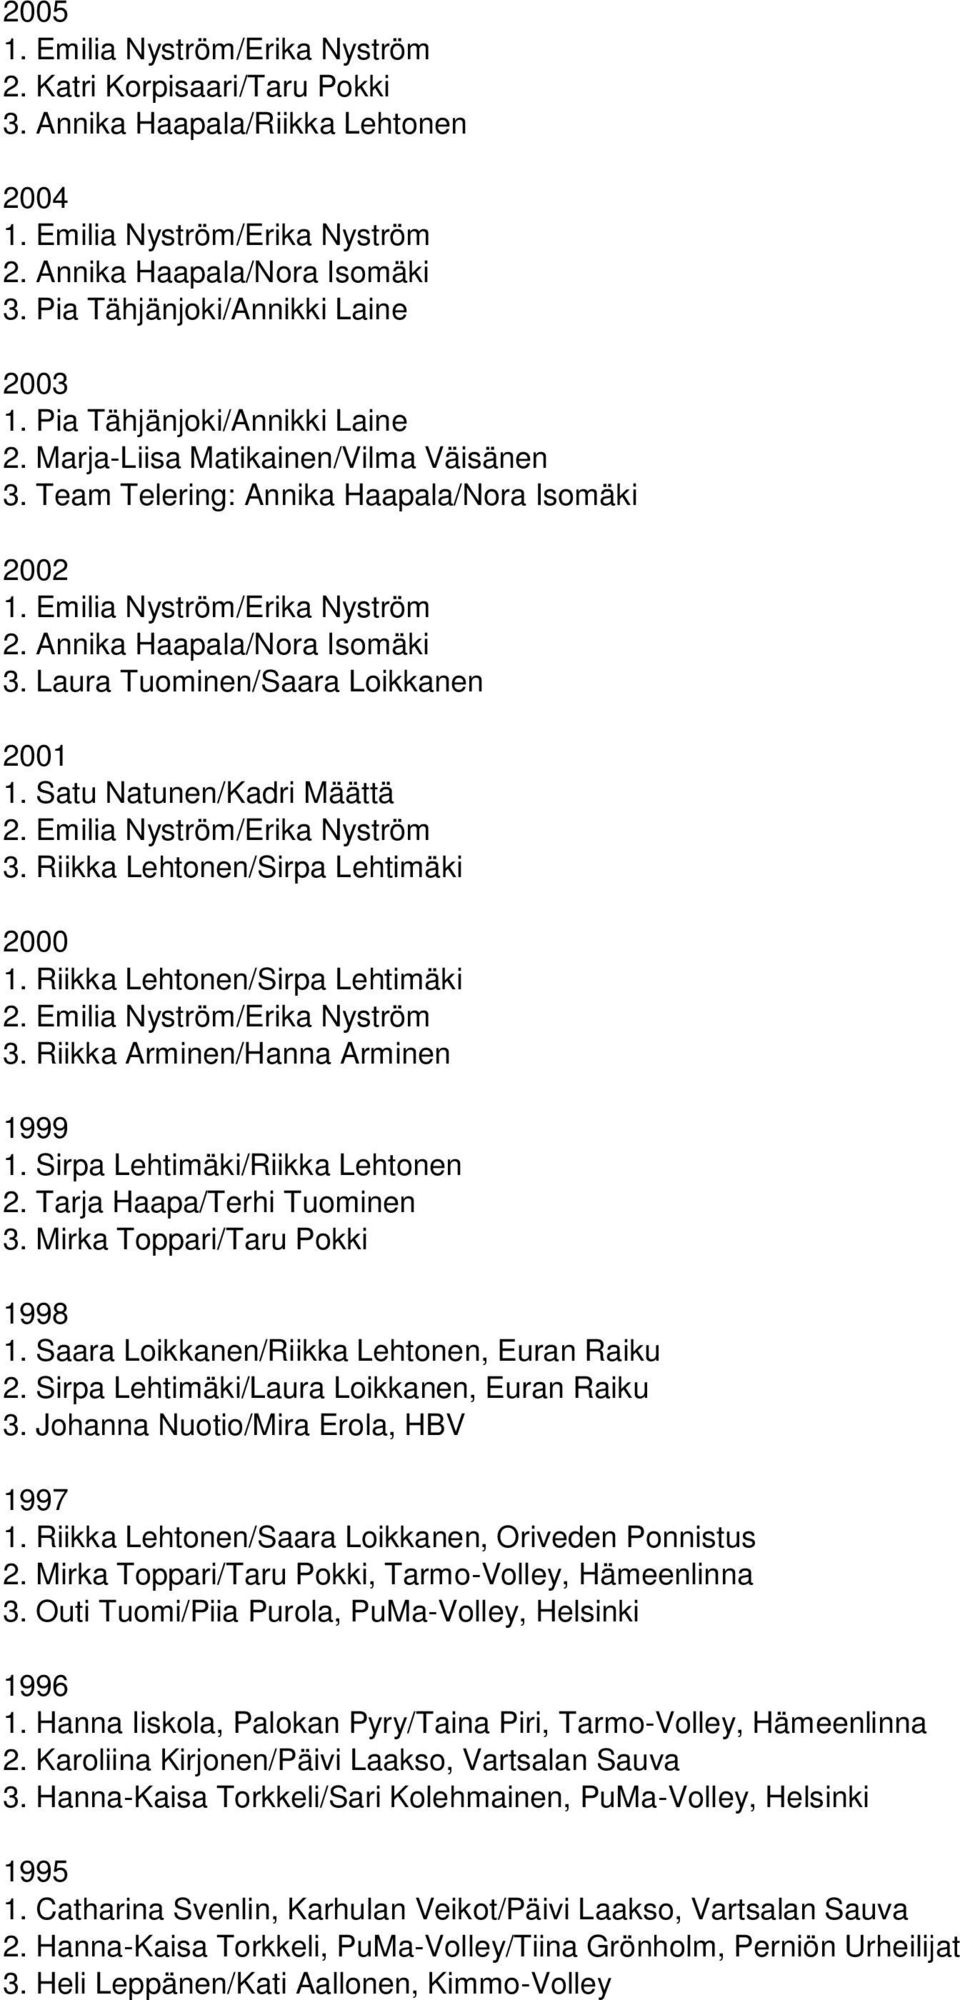 Riikka Lehtonen/Sirpa Lehtimäki 2000 1. Riikka Lehtonen/Sirpa Lehtimäki 2. Emilia Nyström/Erika Nyström 3. Riikka Arminen/Hanna Arminen 1999 1. Sirpa Lehtimäki/Riikka Lehtonen 2.